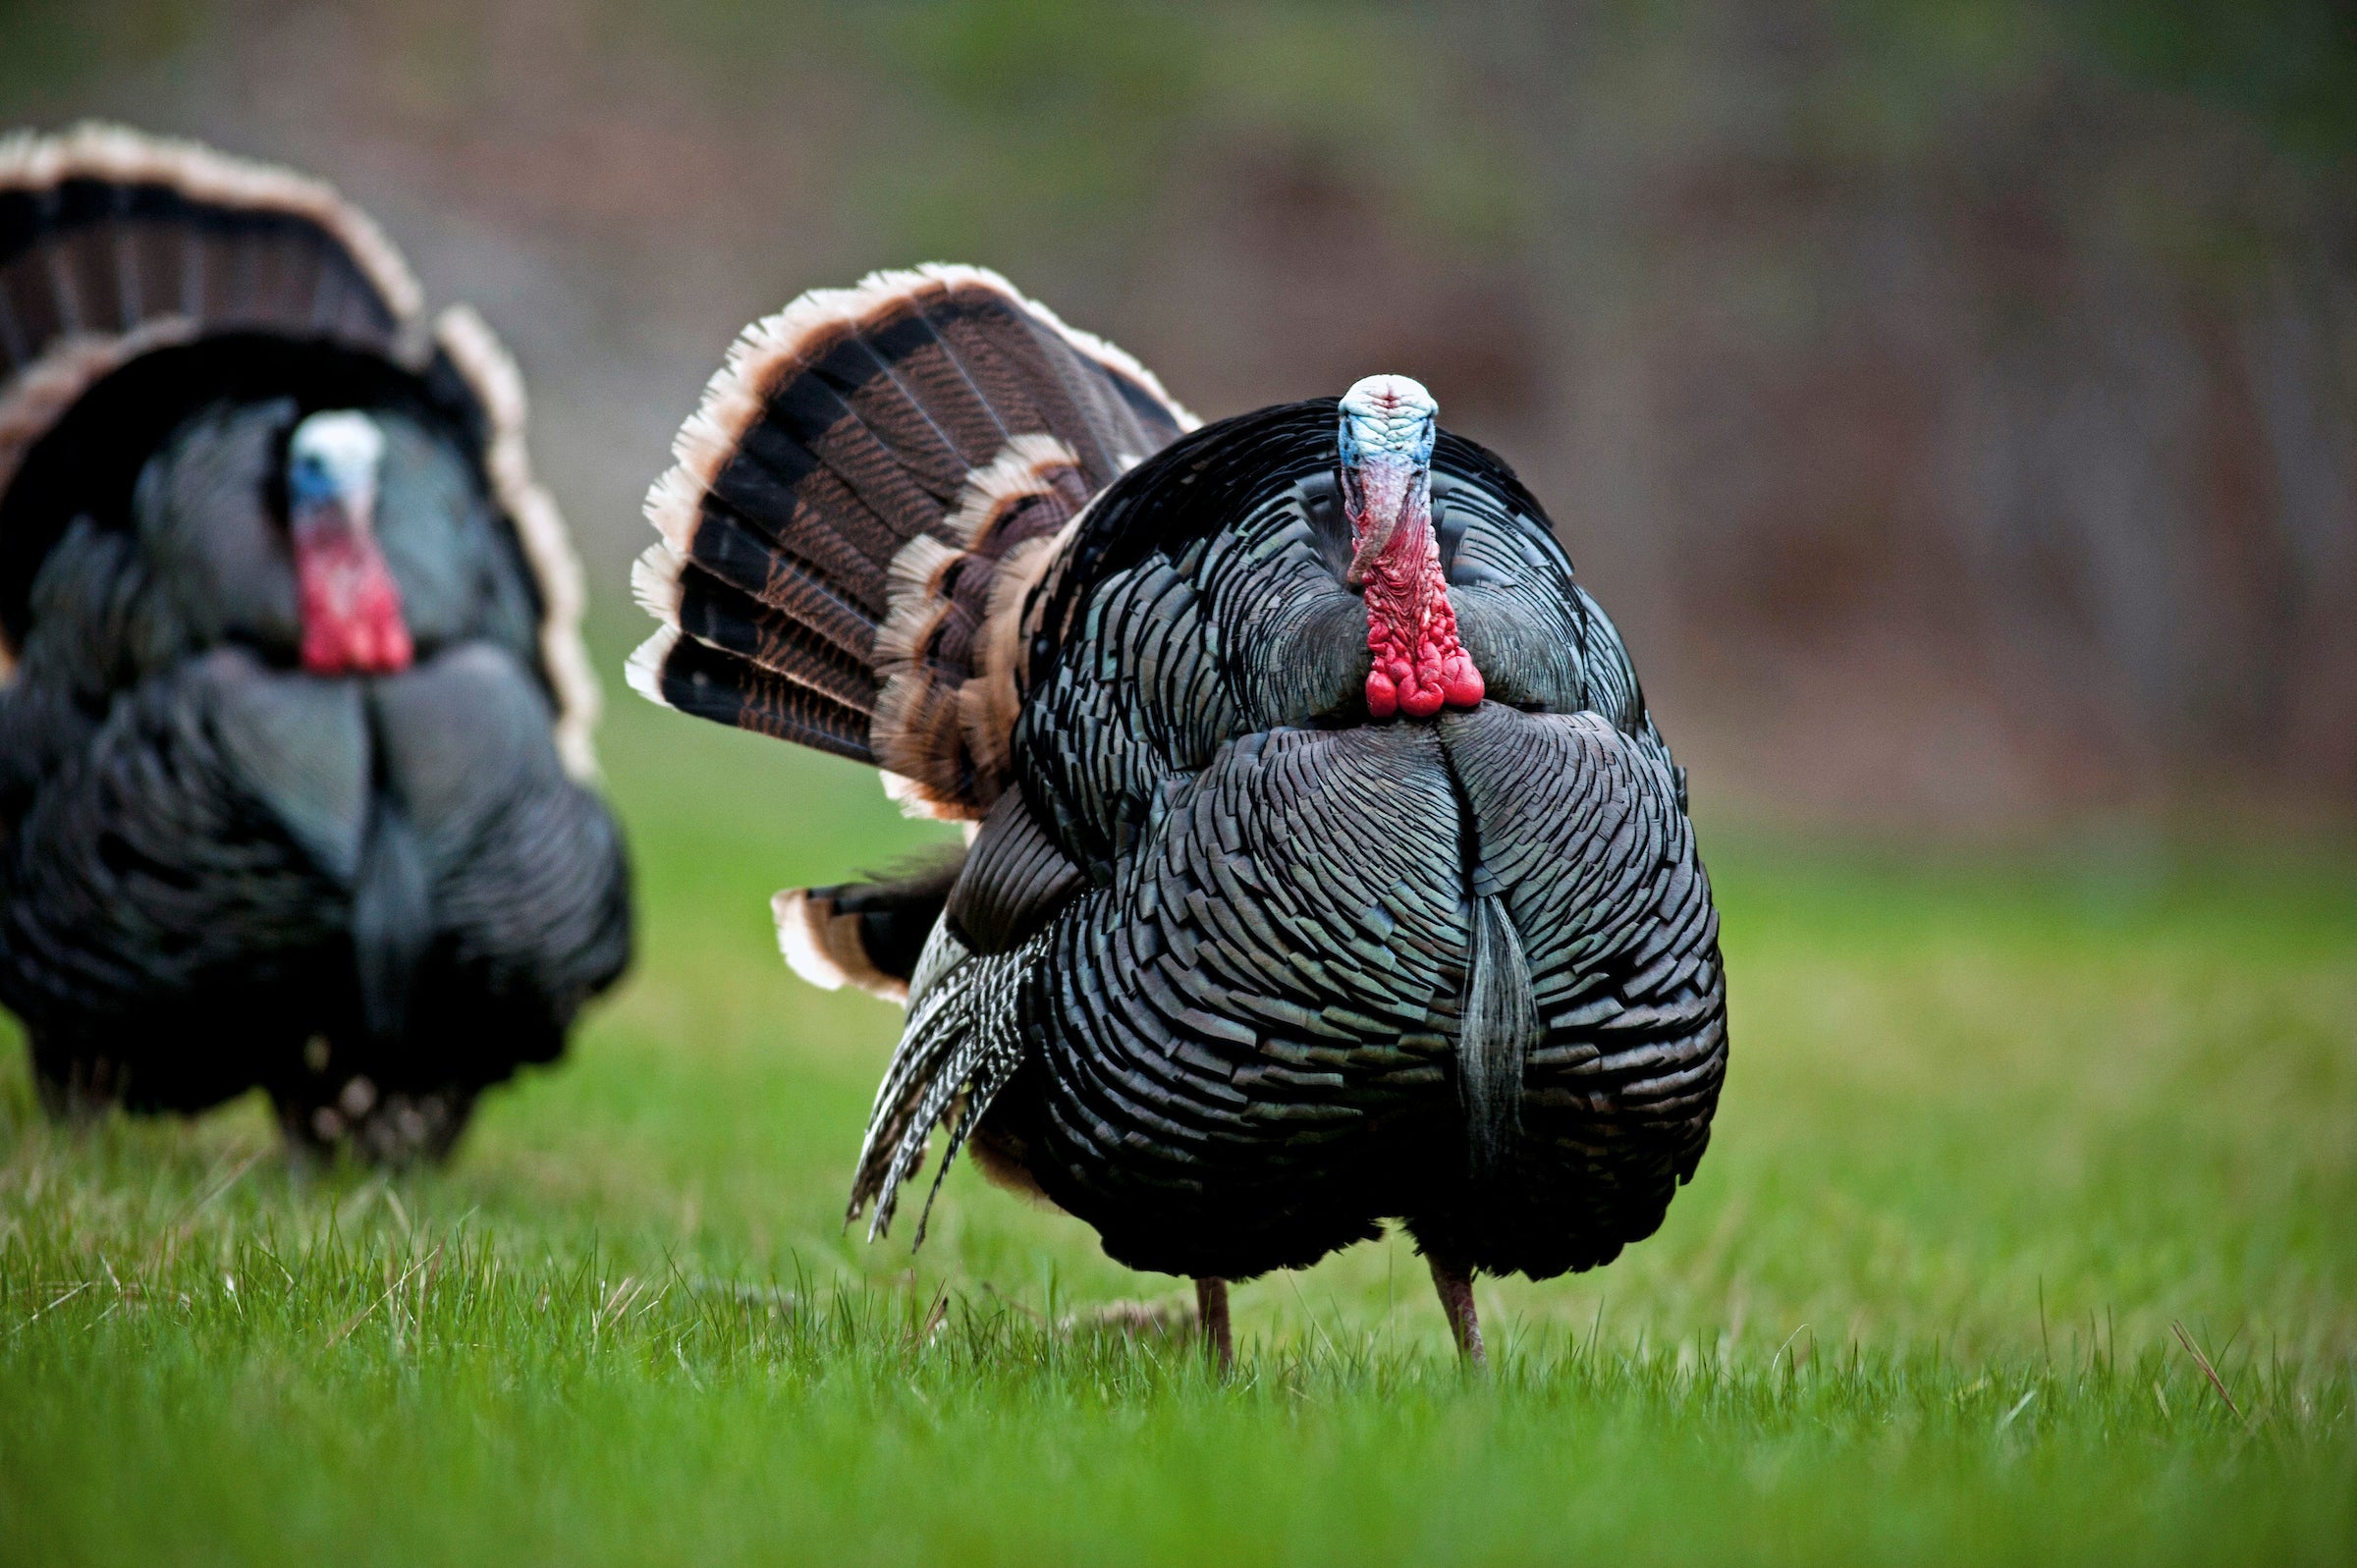 Two Merriam's top turkeys strut in a spring green field.